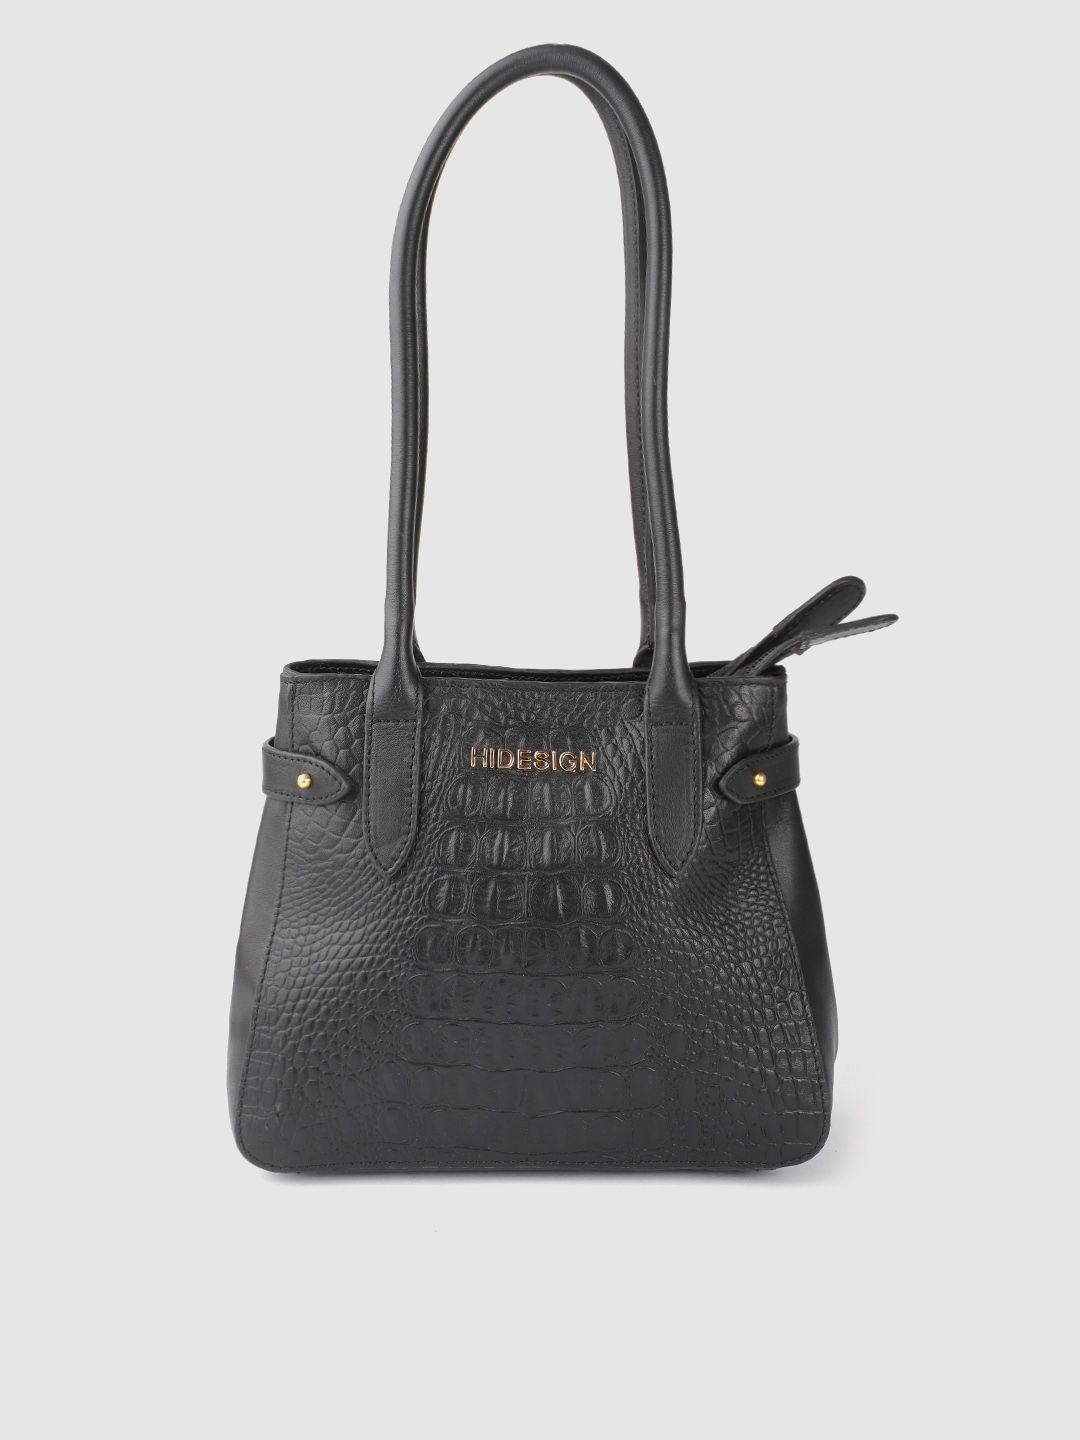 hidesign black croc textured leather handcrafted structured shoulder bag